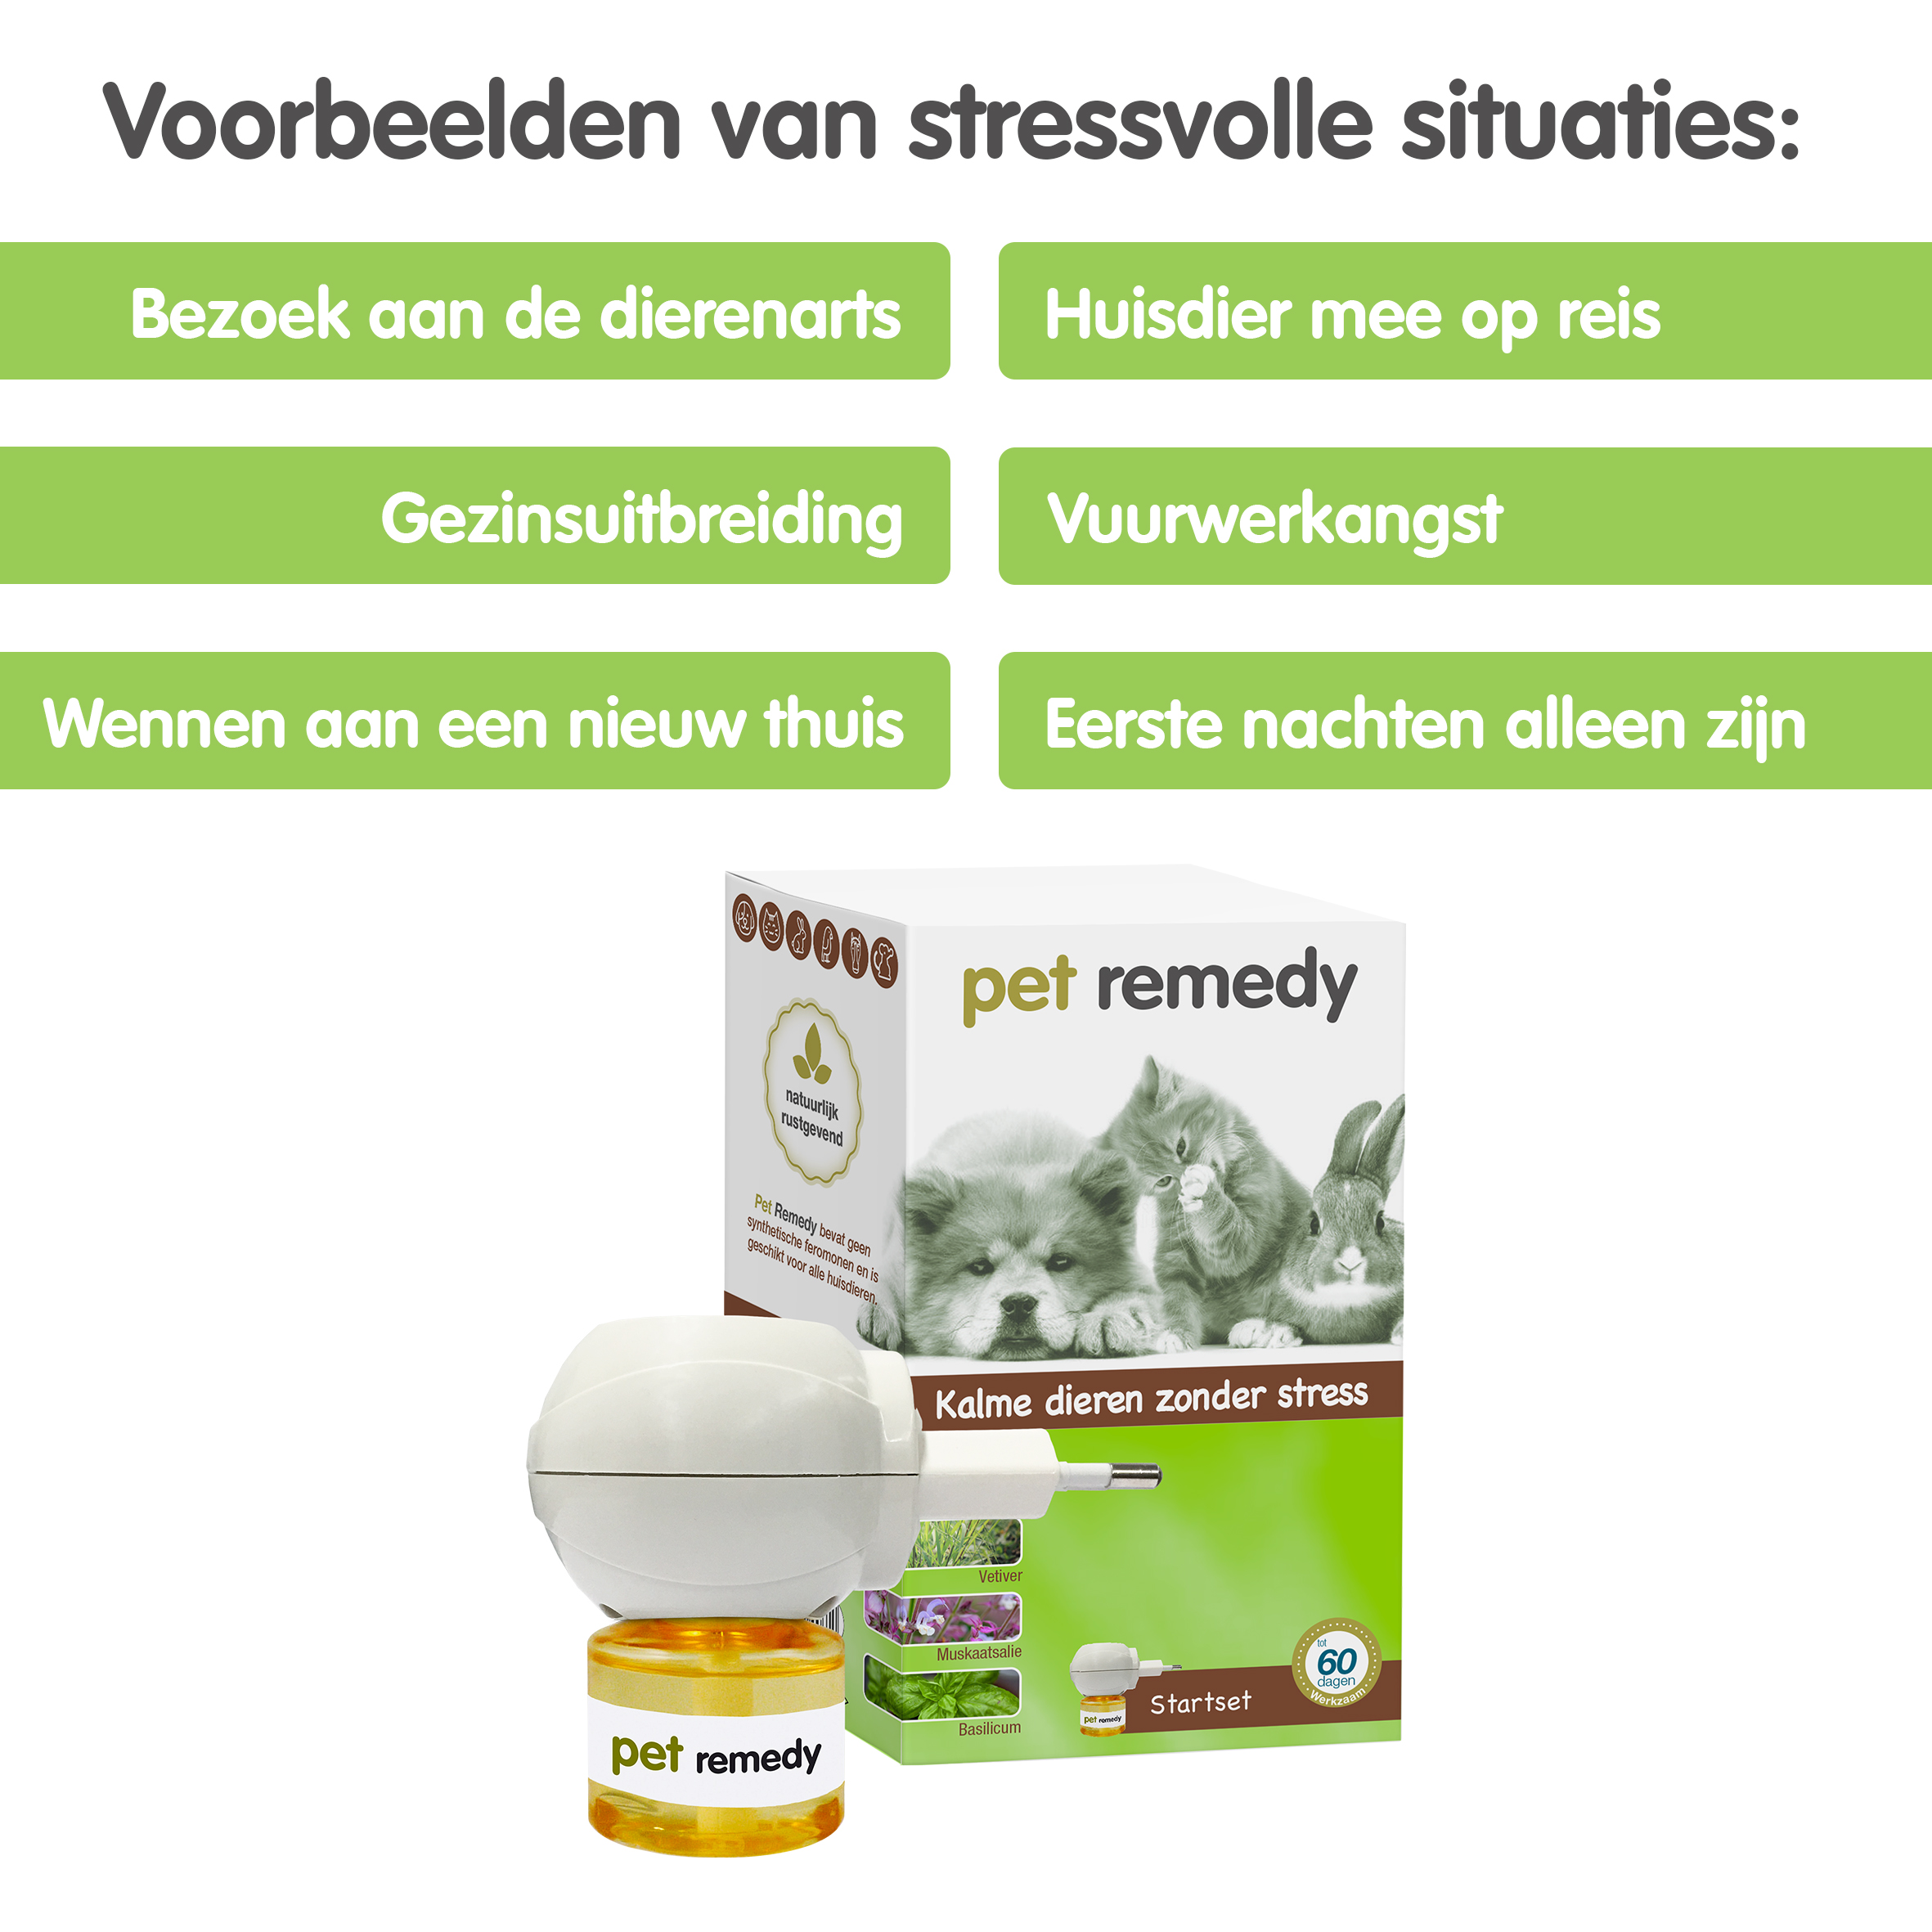 Pet Remedy startset met verdamper, tegen stress bij huisdieren - Emax.nl